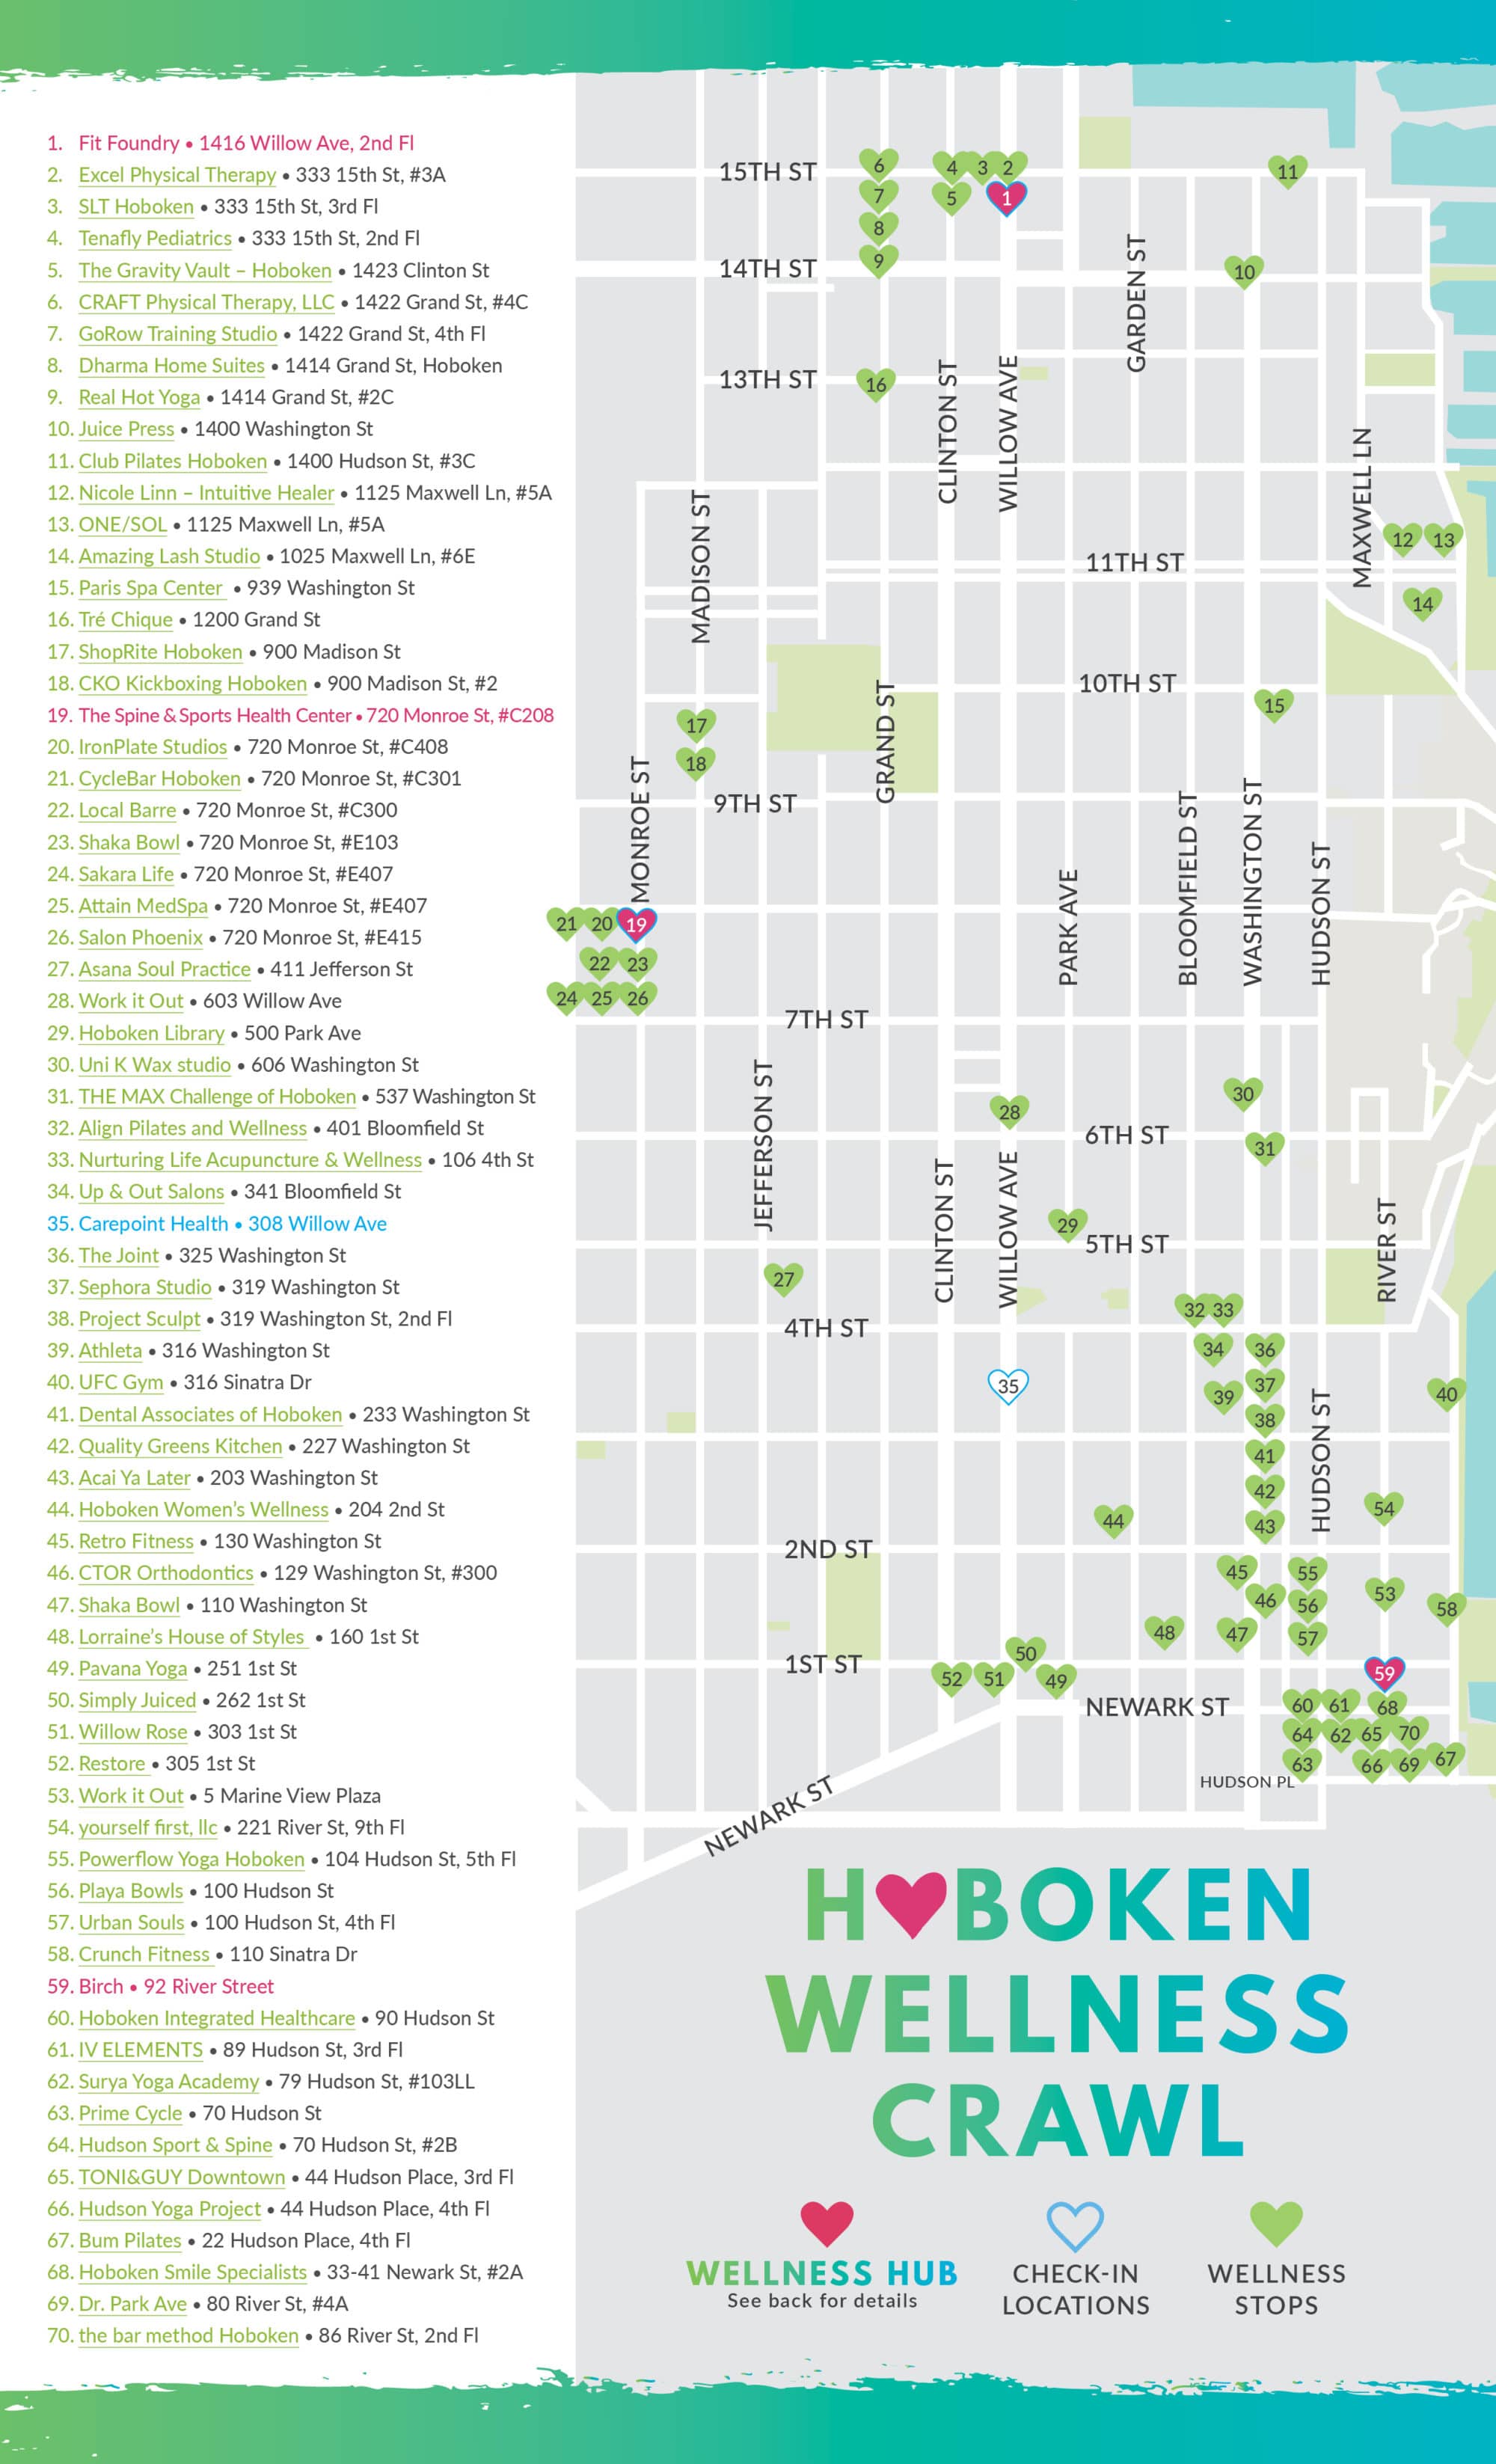 hoboken wellness crawl 2019 map